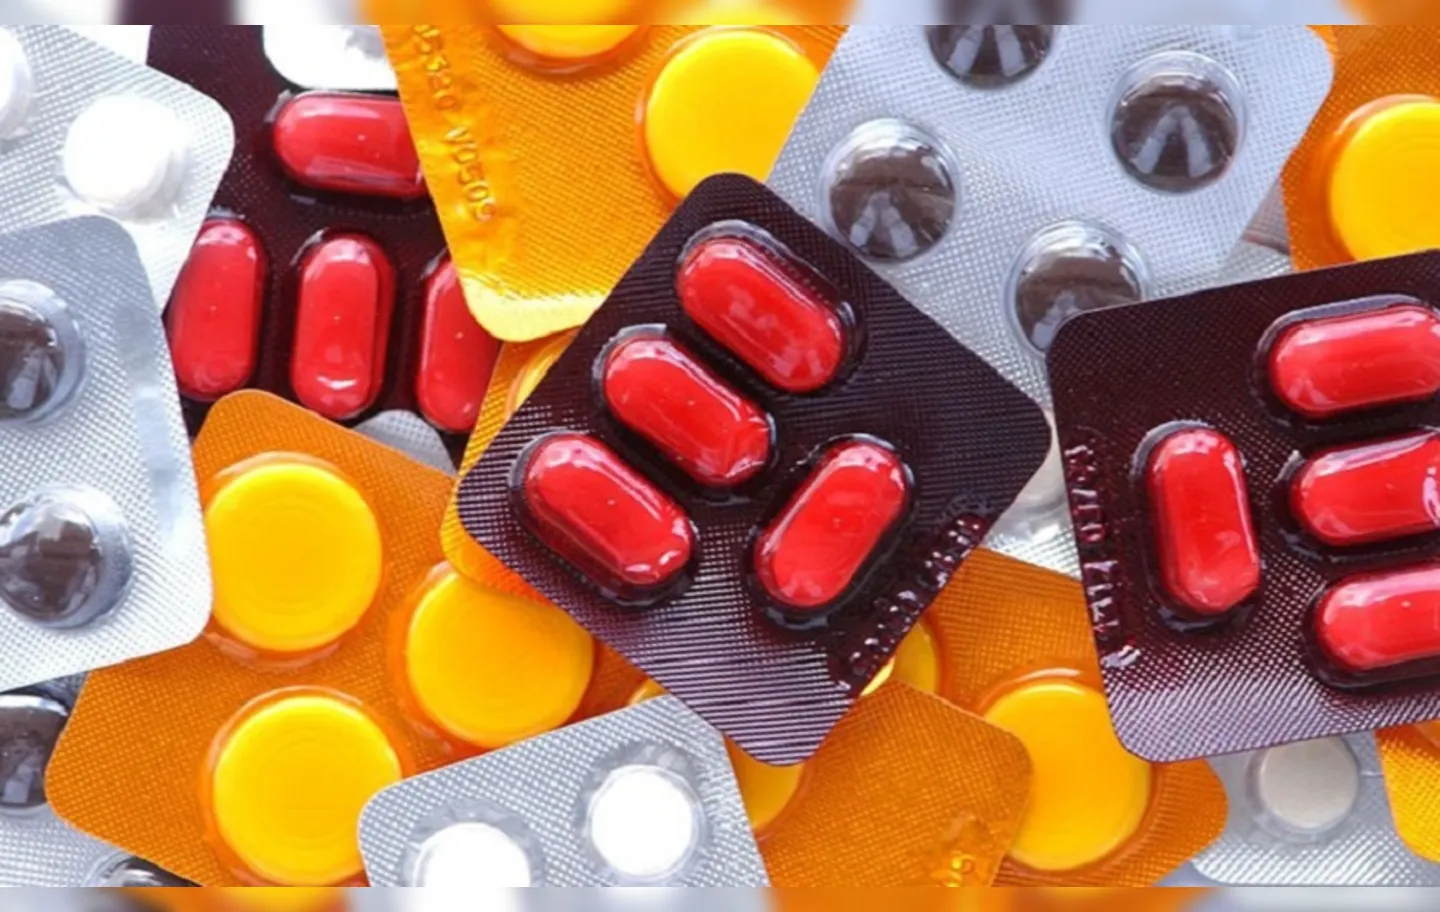 Entre os medicamentos e itens de saúde, estão remédios para HIV, vacinas, contraceptivos